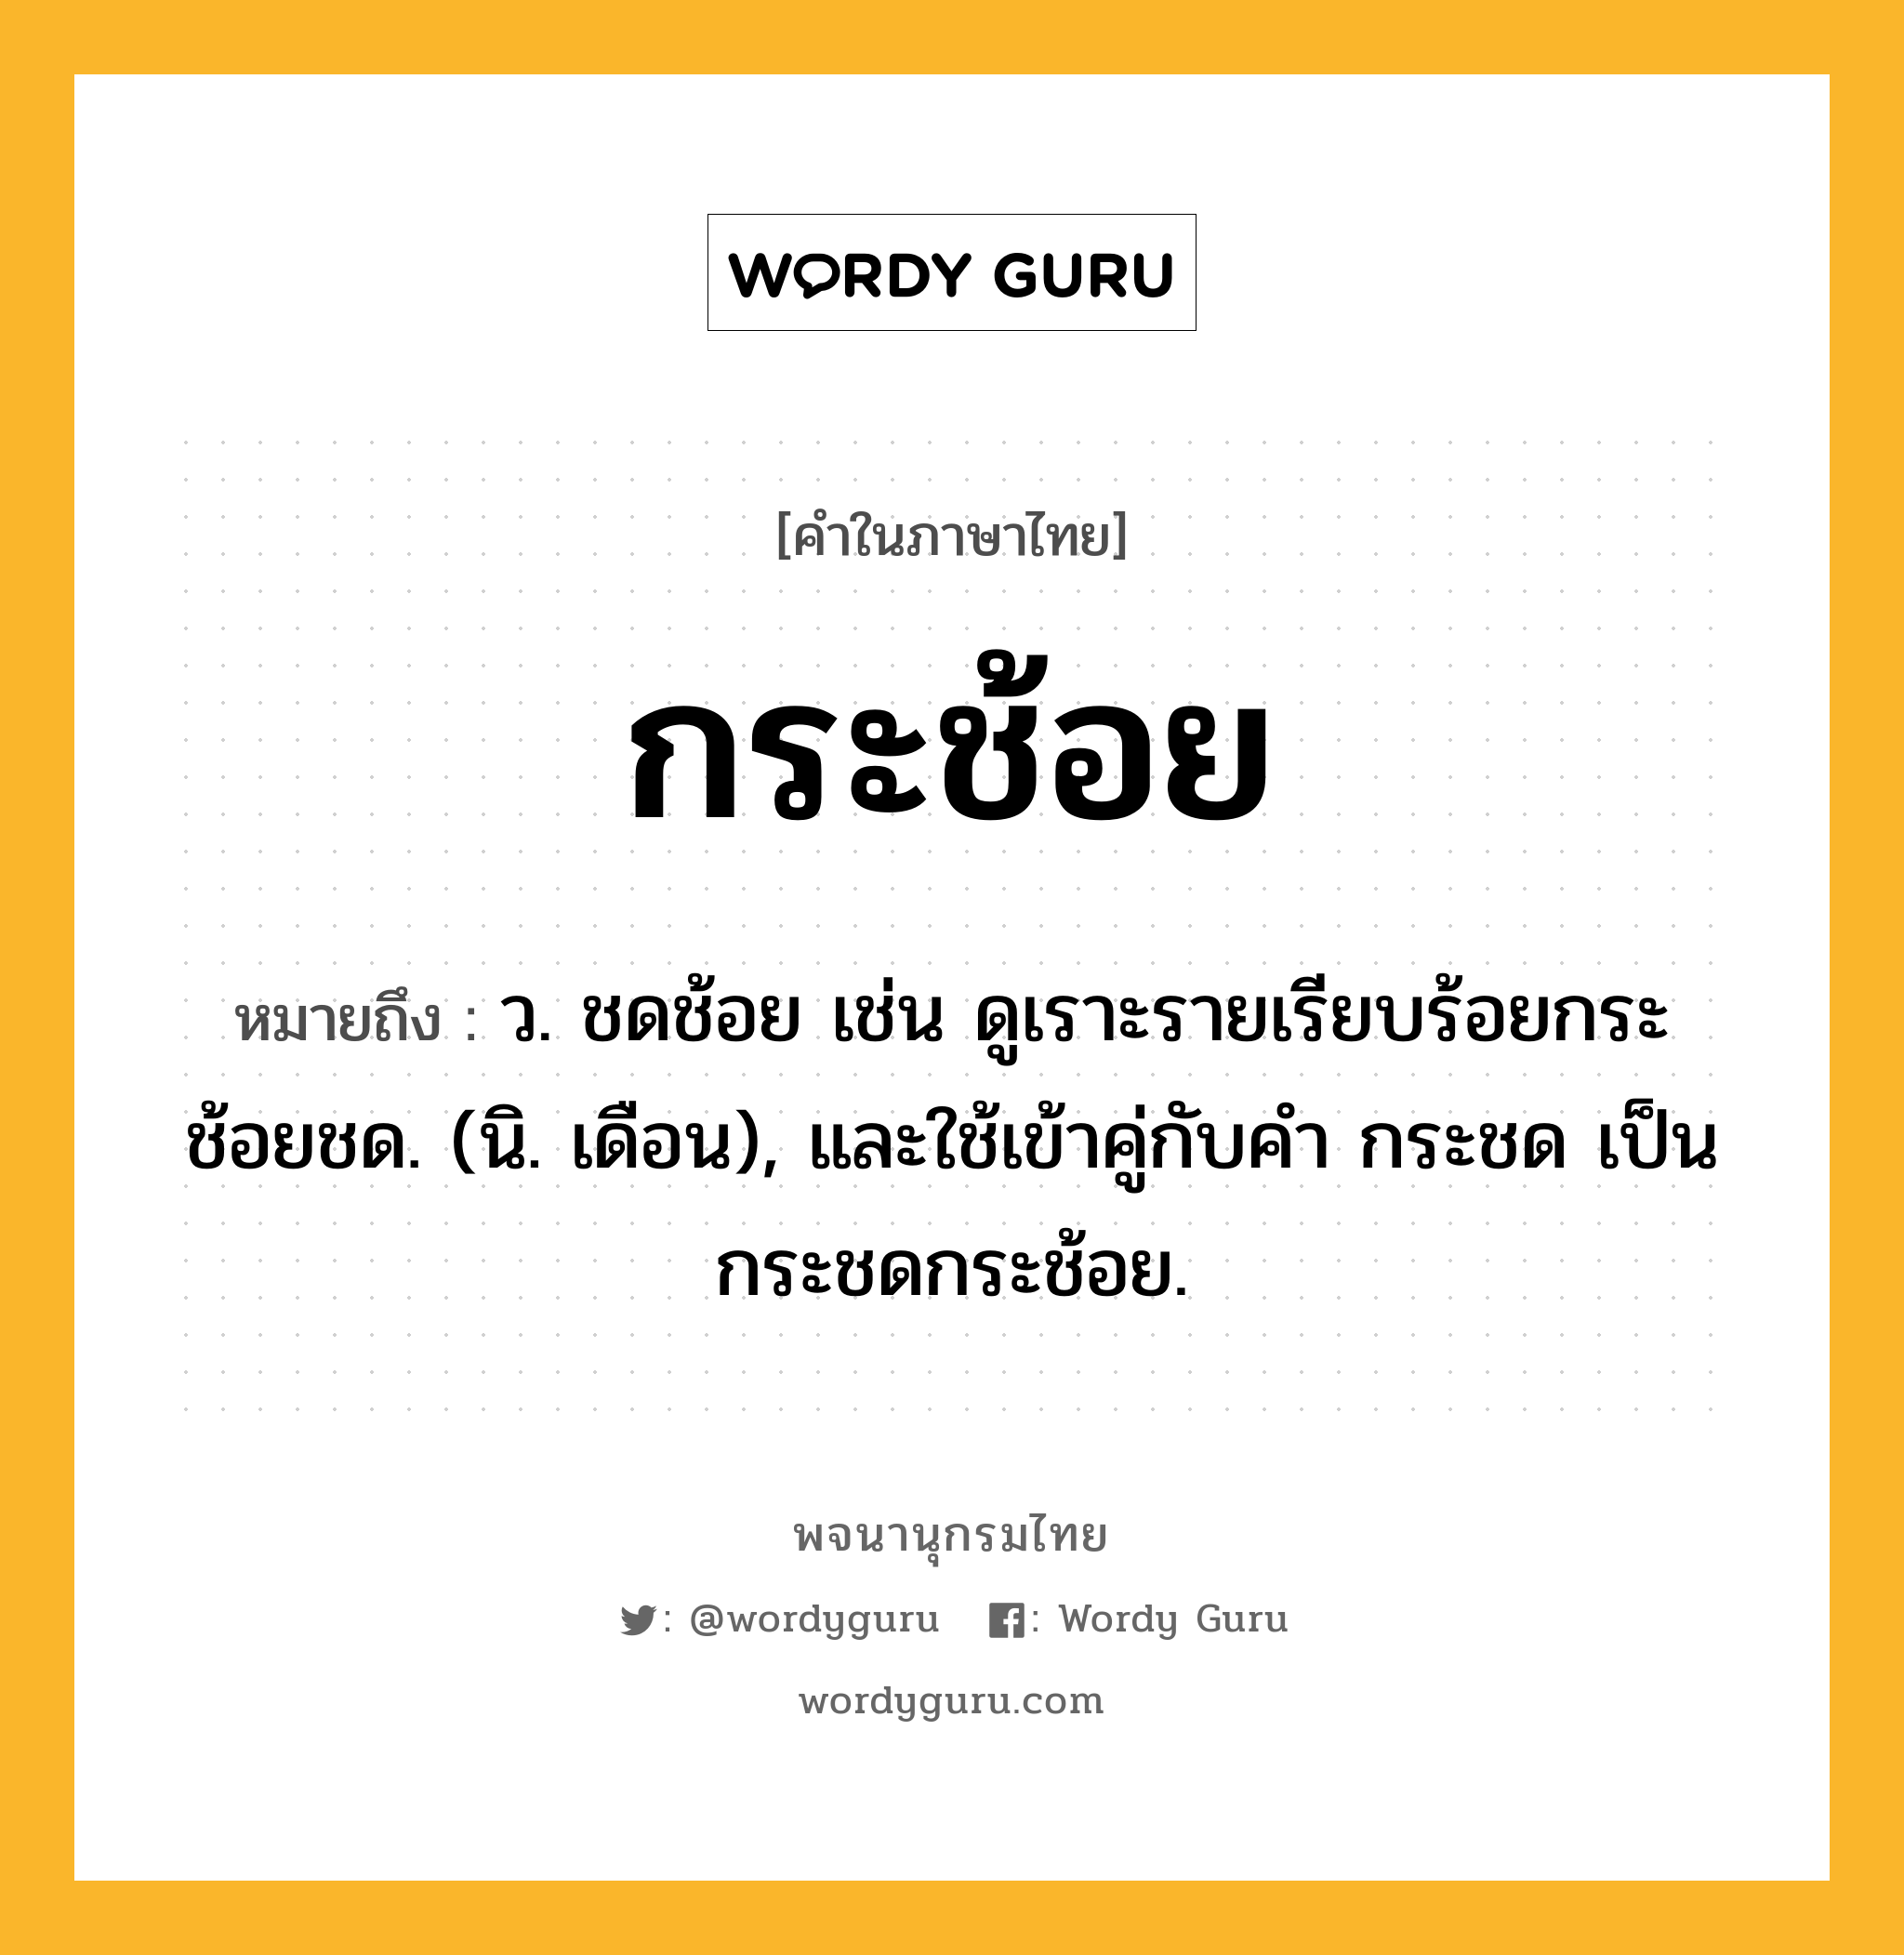 กระช้อย หมายถึงอะไร?, คำในภาษาไทย กระช้อย หมายถึง ว. ชดช้อย เช่น ดูเราะรายเรียบร้อยกระช้อยชด. (นิ. เดือน), และใช้เข้าคู่กับคํา กระชด เป็น กระชดกระช้อย.